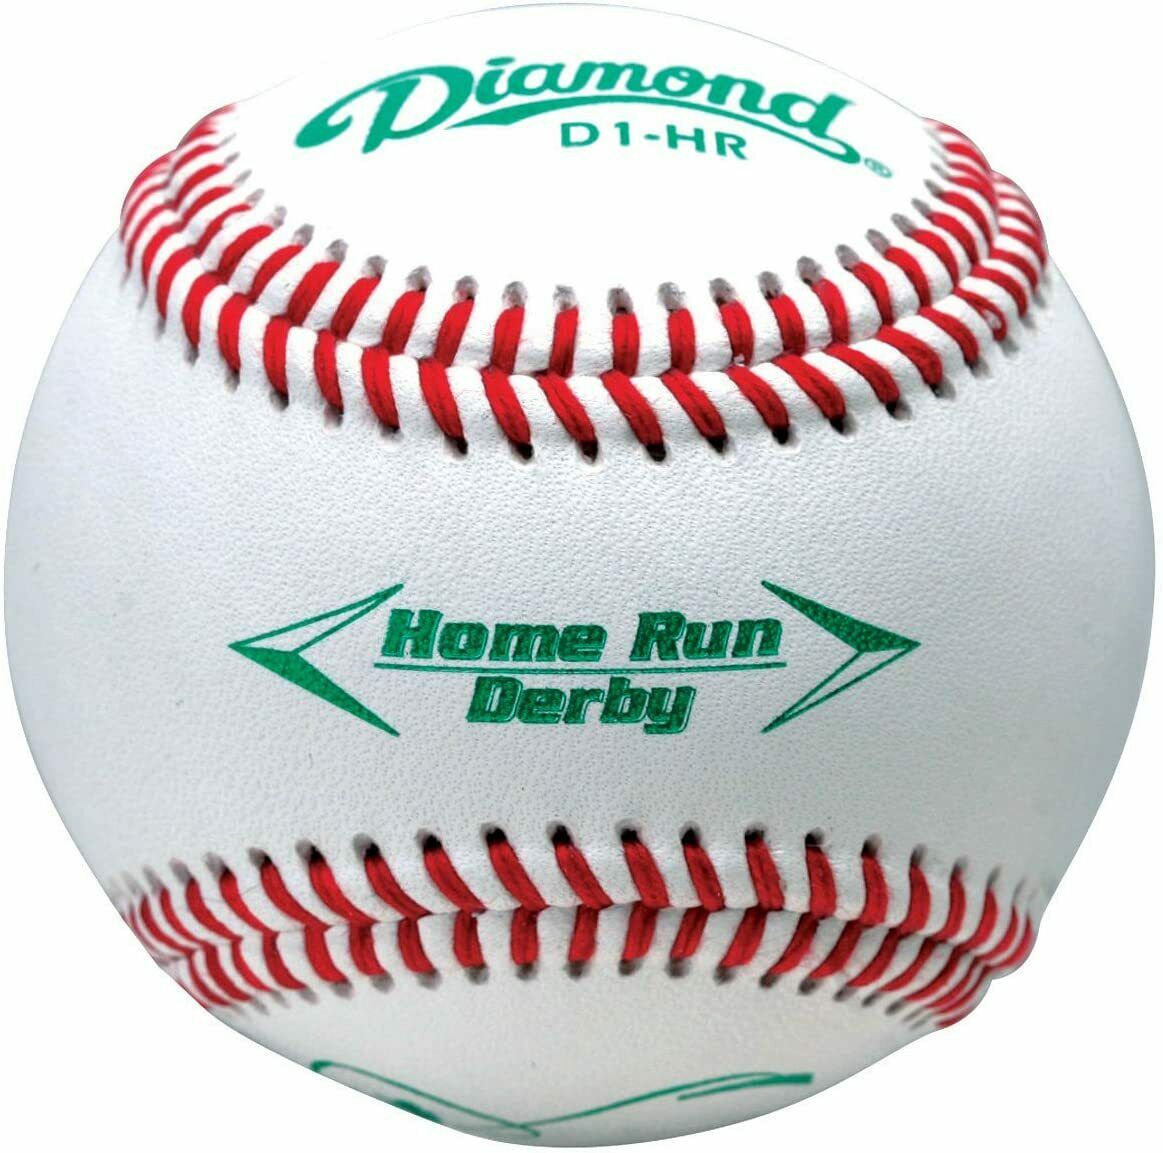 Deportes Diamante | D1-HR | Pelotas oficiales de béisbol Home Run Derby | 1 docena de bolas